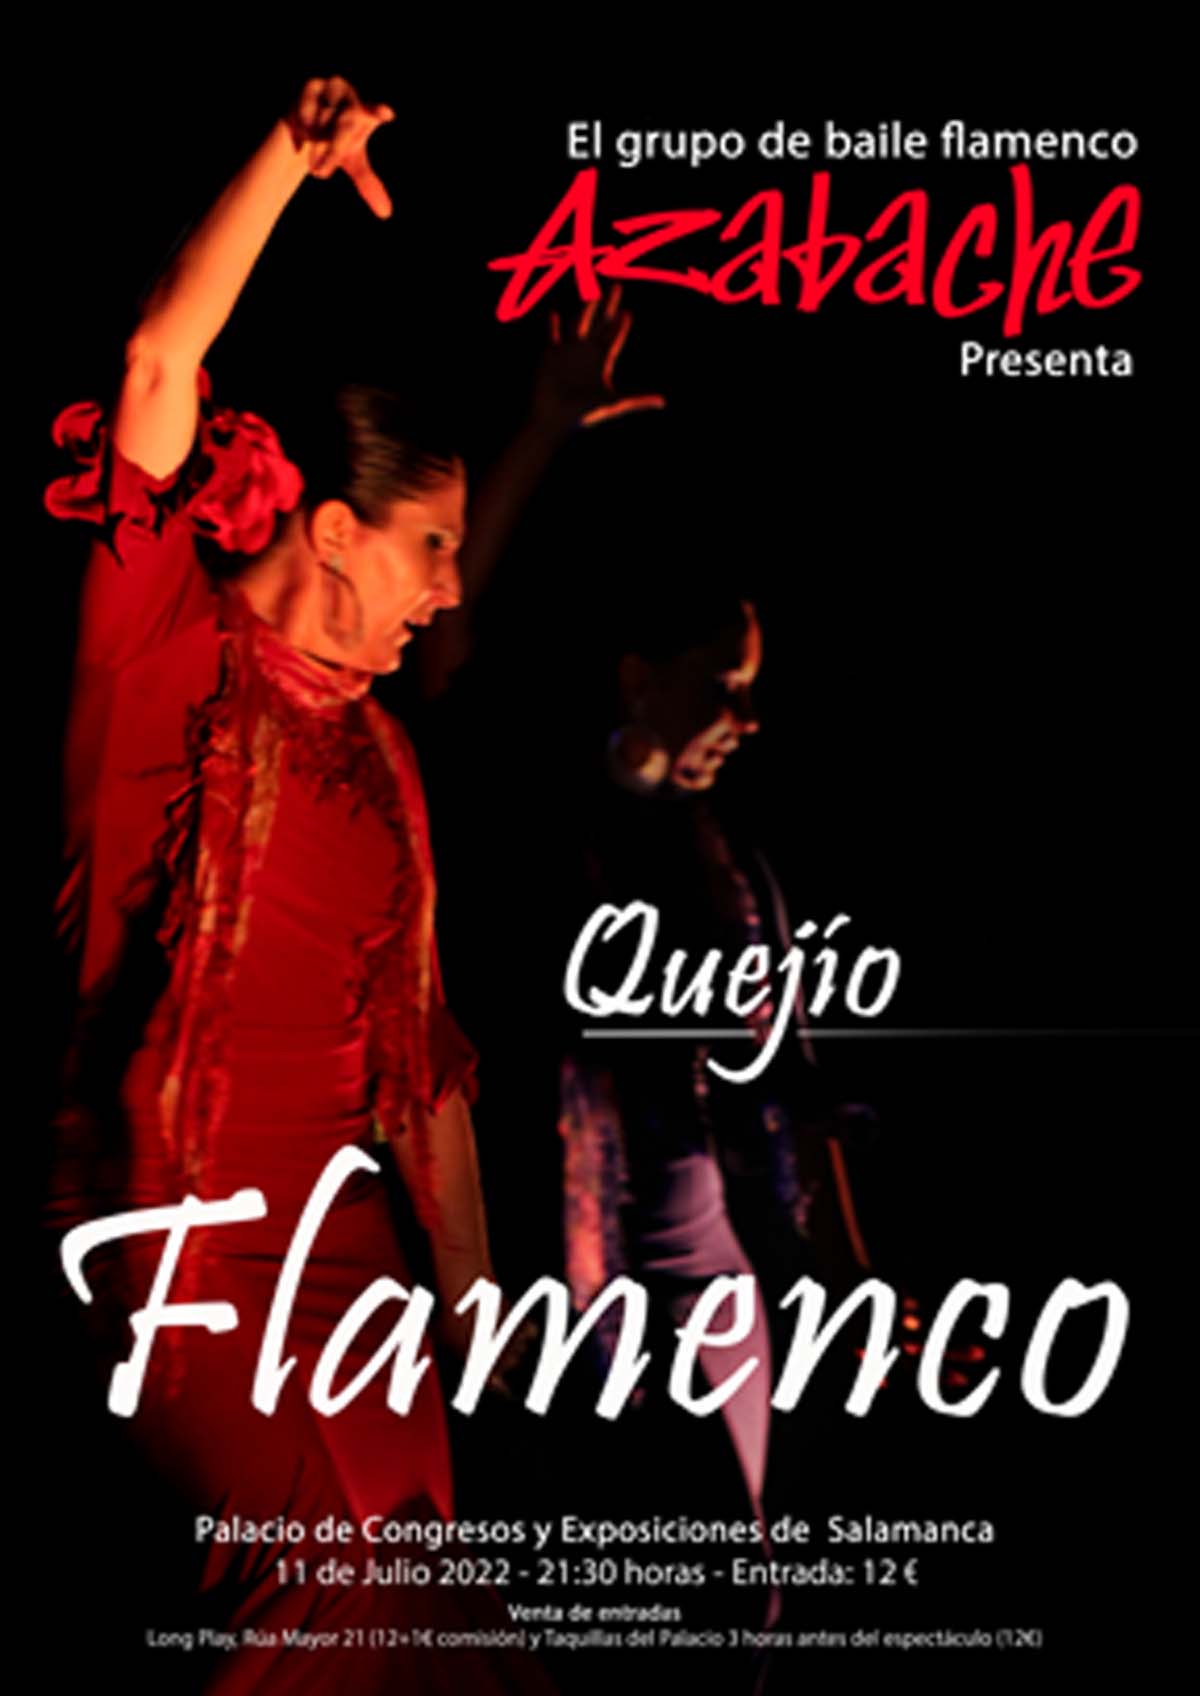 Flamenco Azabache en el Palacio de Congresos de Salamanca